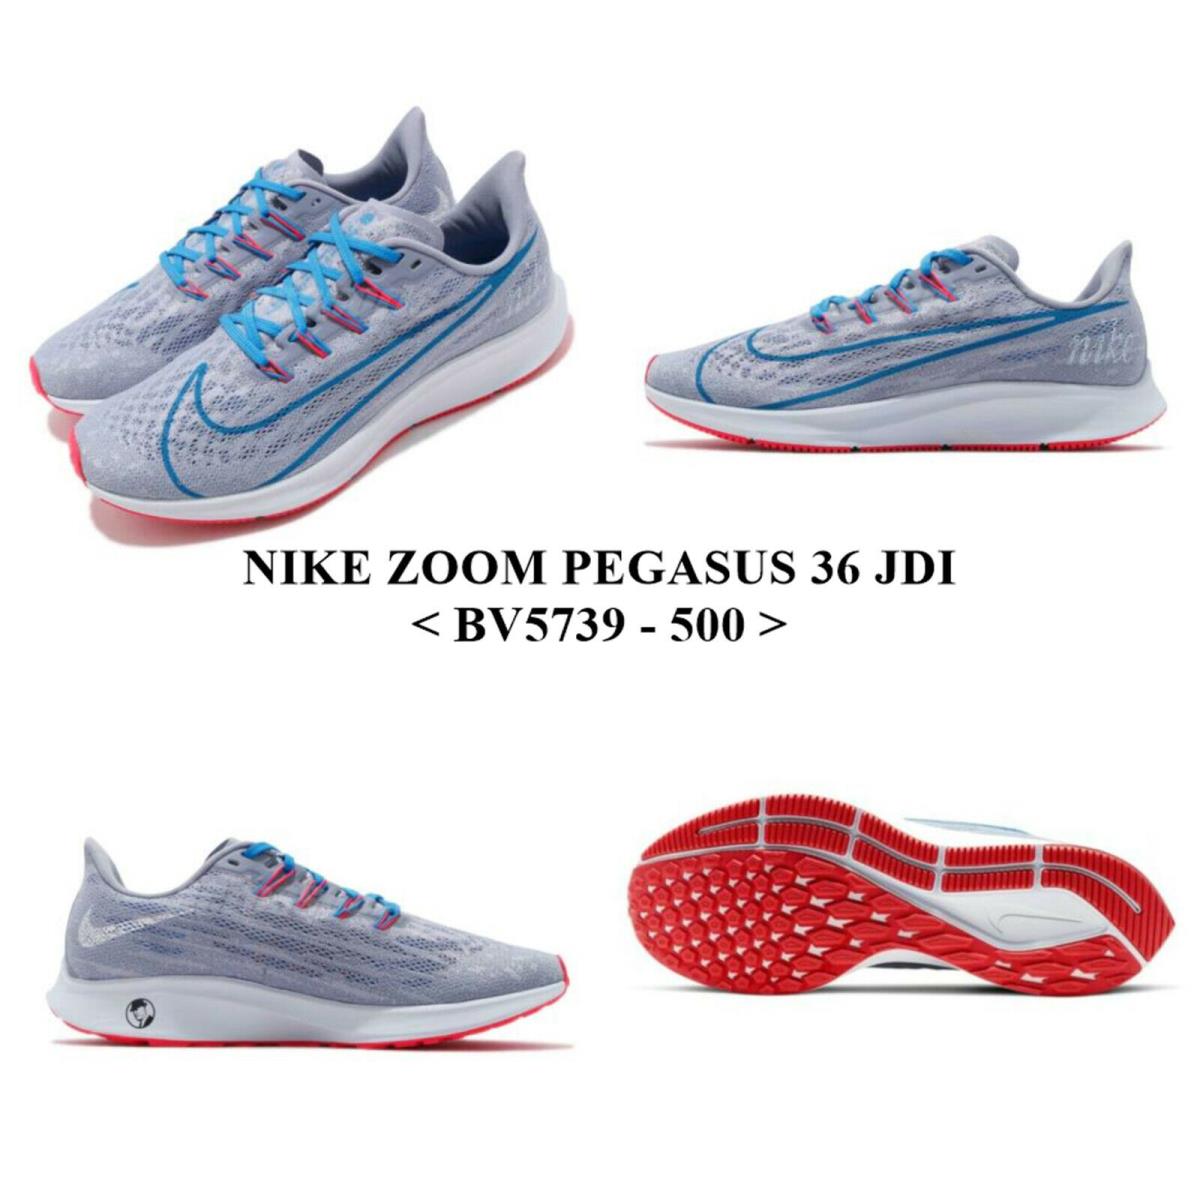 Nike Air Zoom Pegasus 36 Jdi BV5739 - 500 .men`s Running Shoe .nwb NO Lid - INDIGO HAZE / BLUE HERO , INDIGO HAZE / BLUE HERO Manufacturer